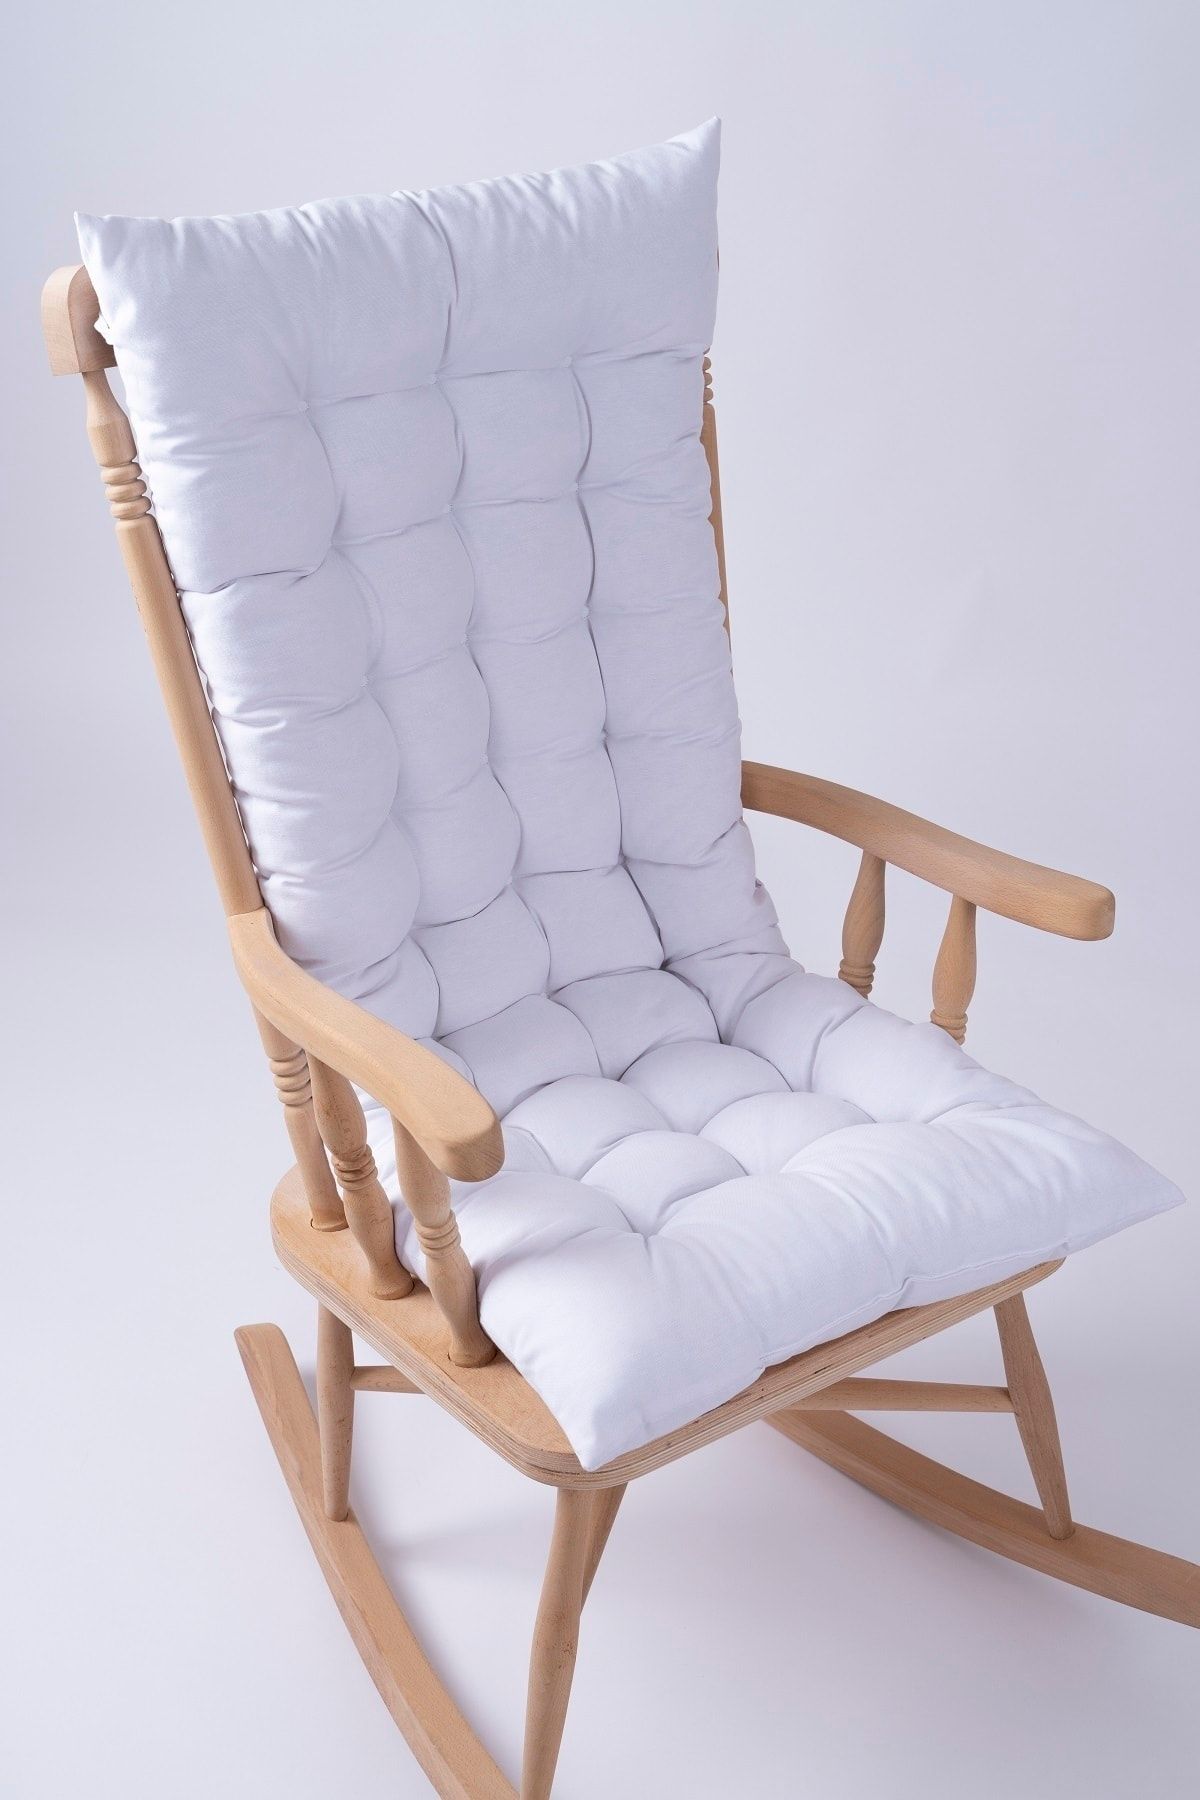 ALTINPAMUK Selen Lüx Sallanan Sandalye, Bank, Salıncak Minderi 120x50cm Beyaz (SADECE MİNDER)